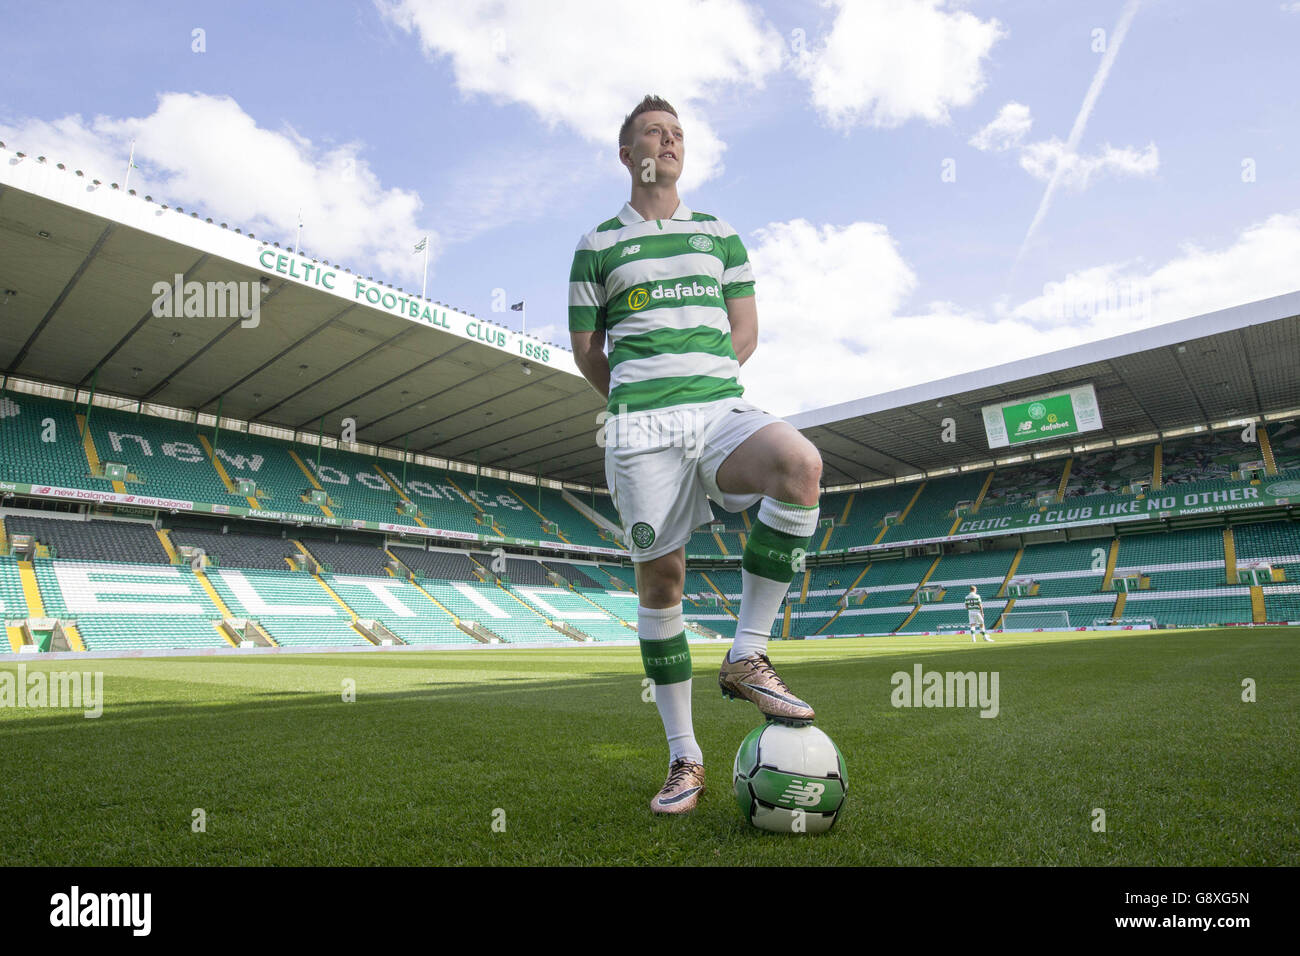 Lancement d'un nouveau kit celtique avec Callum McGregor lors d'un photocall au Celtic Park, Glasgow. Banque D'Images